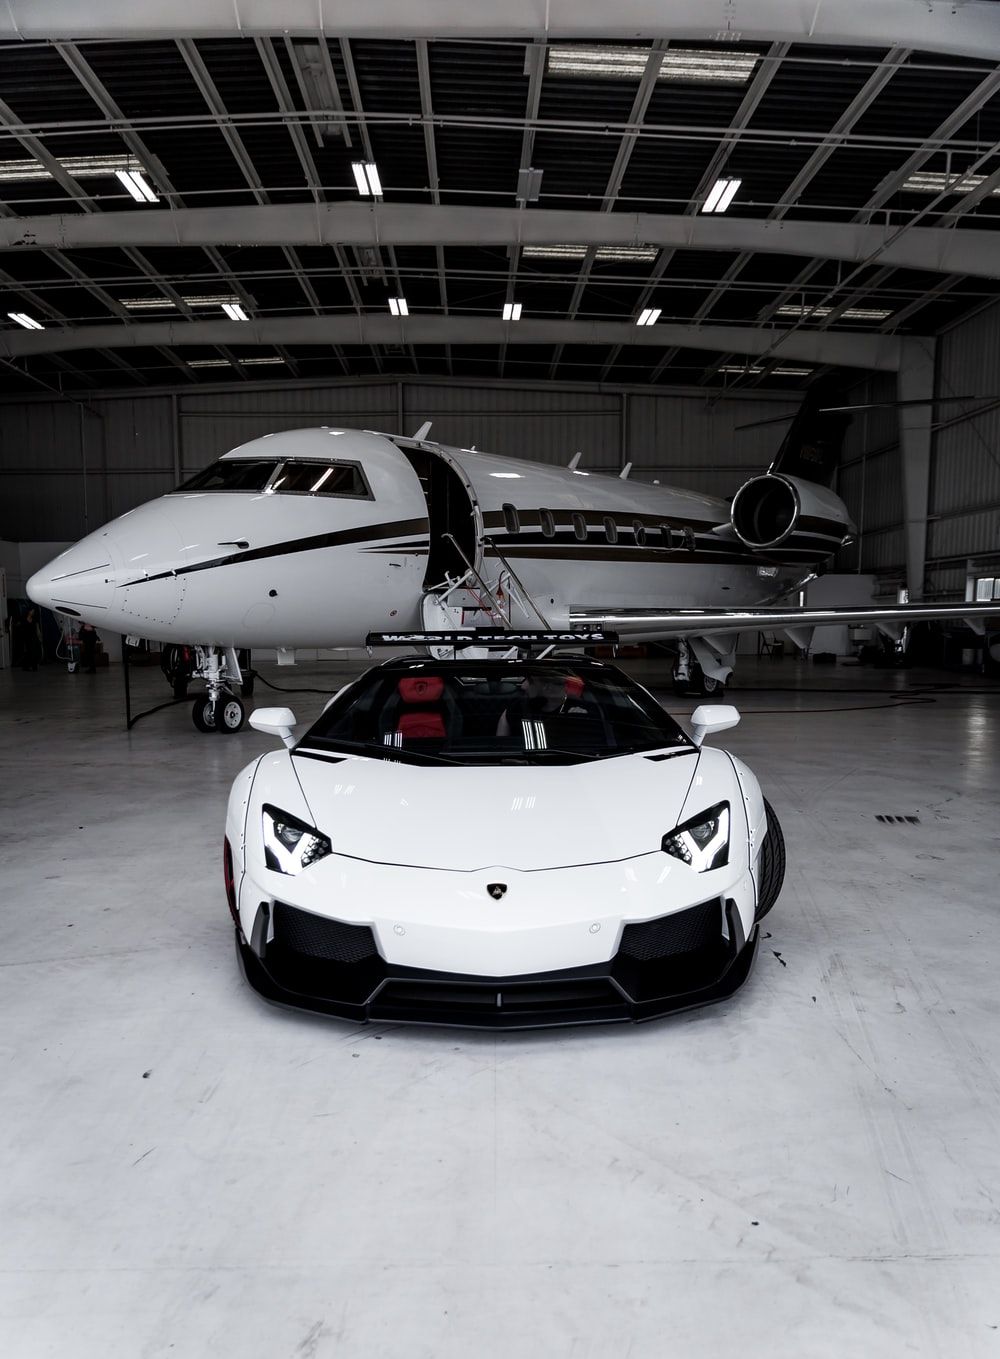 Más de 100 fotos de Lamborghini | Descargar imágenes gratis